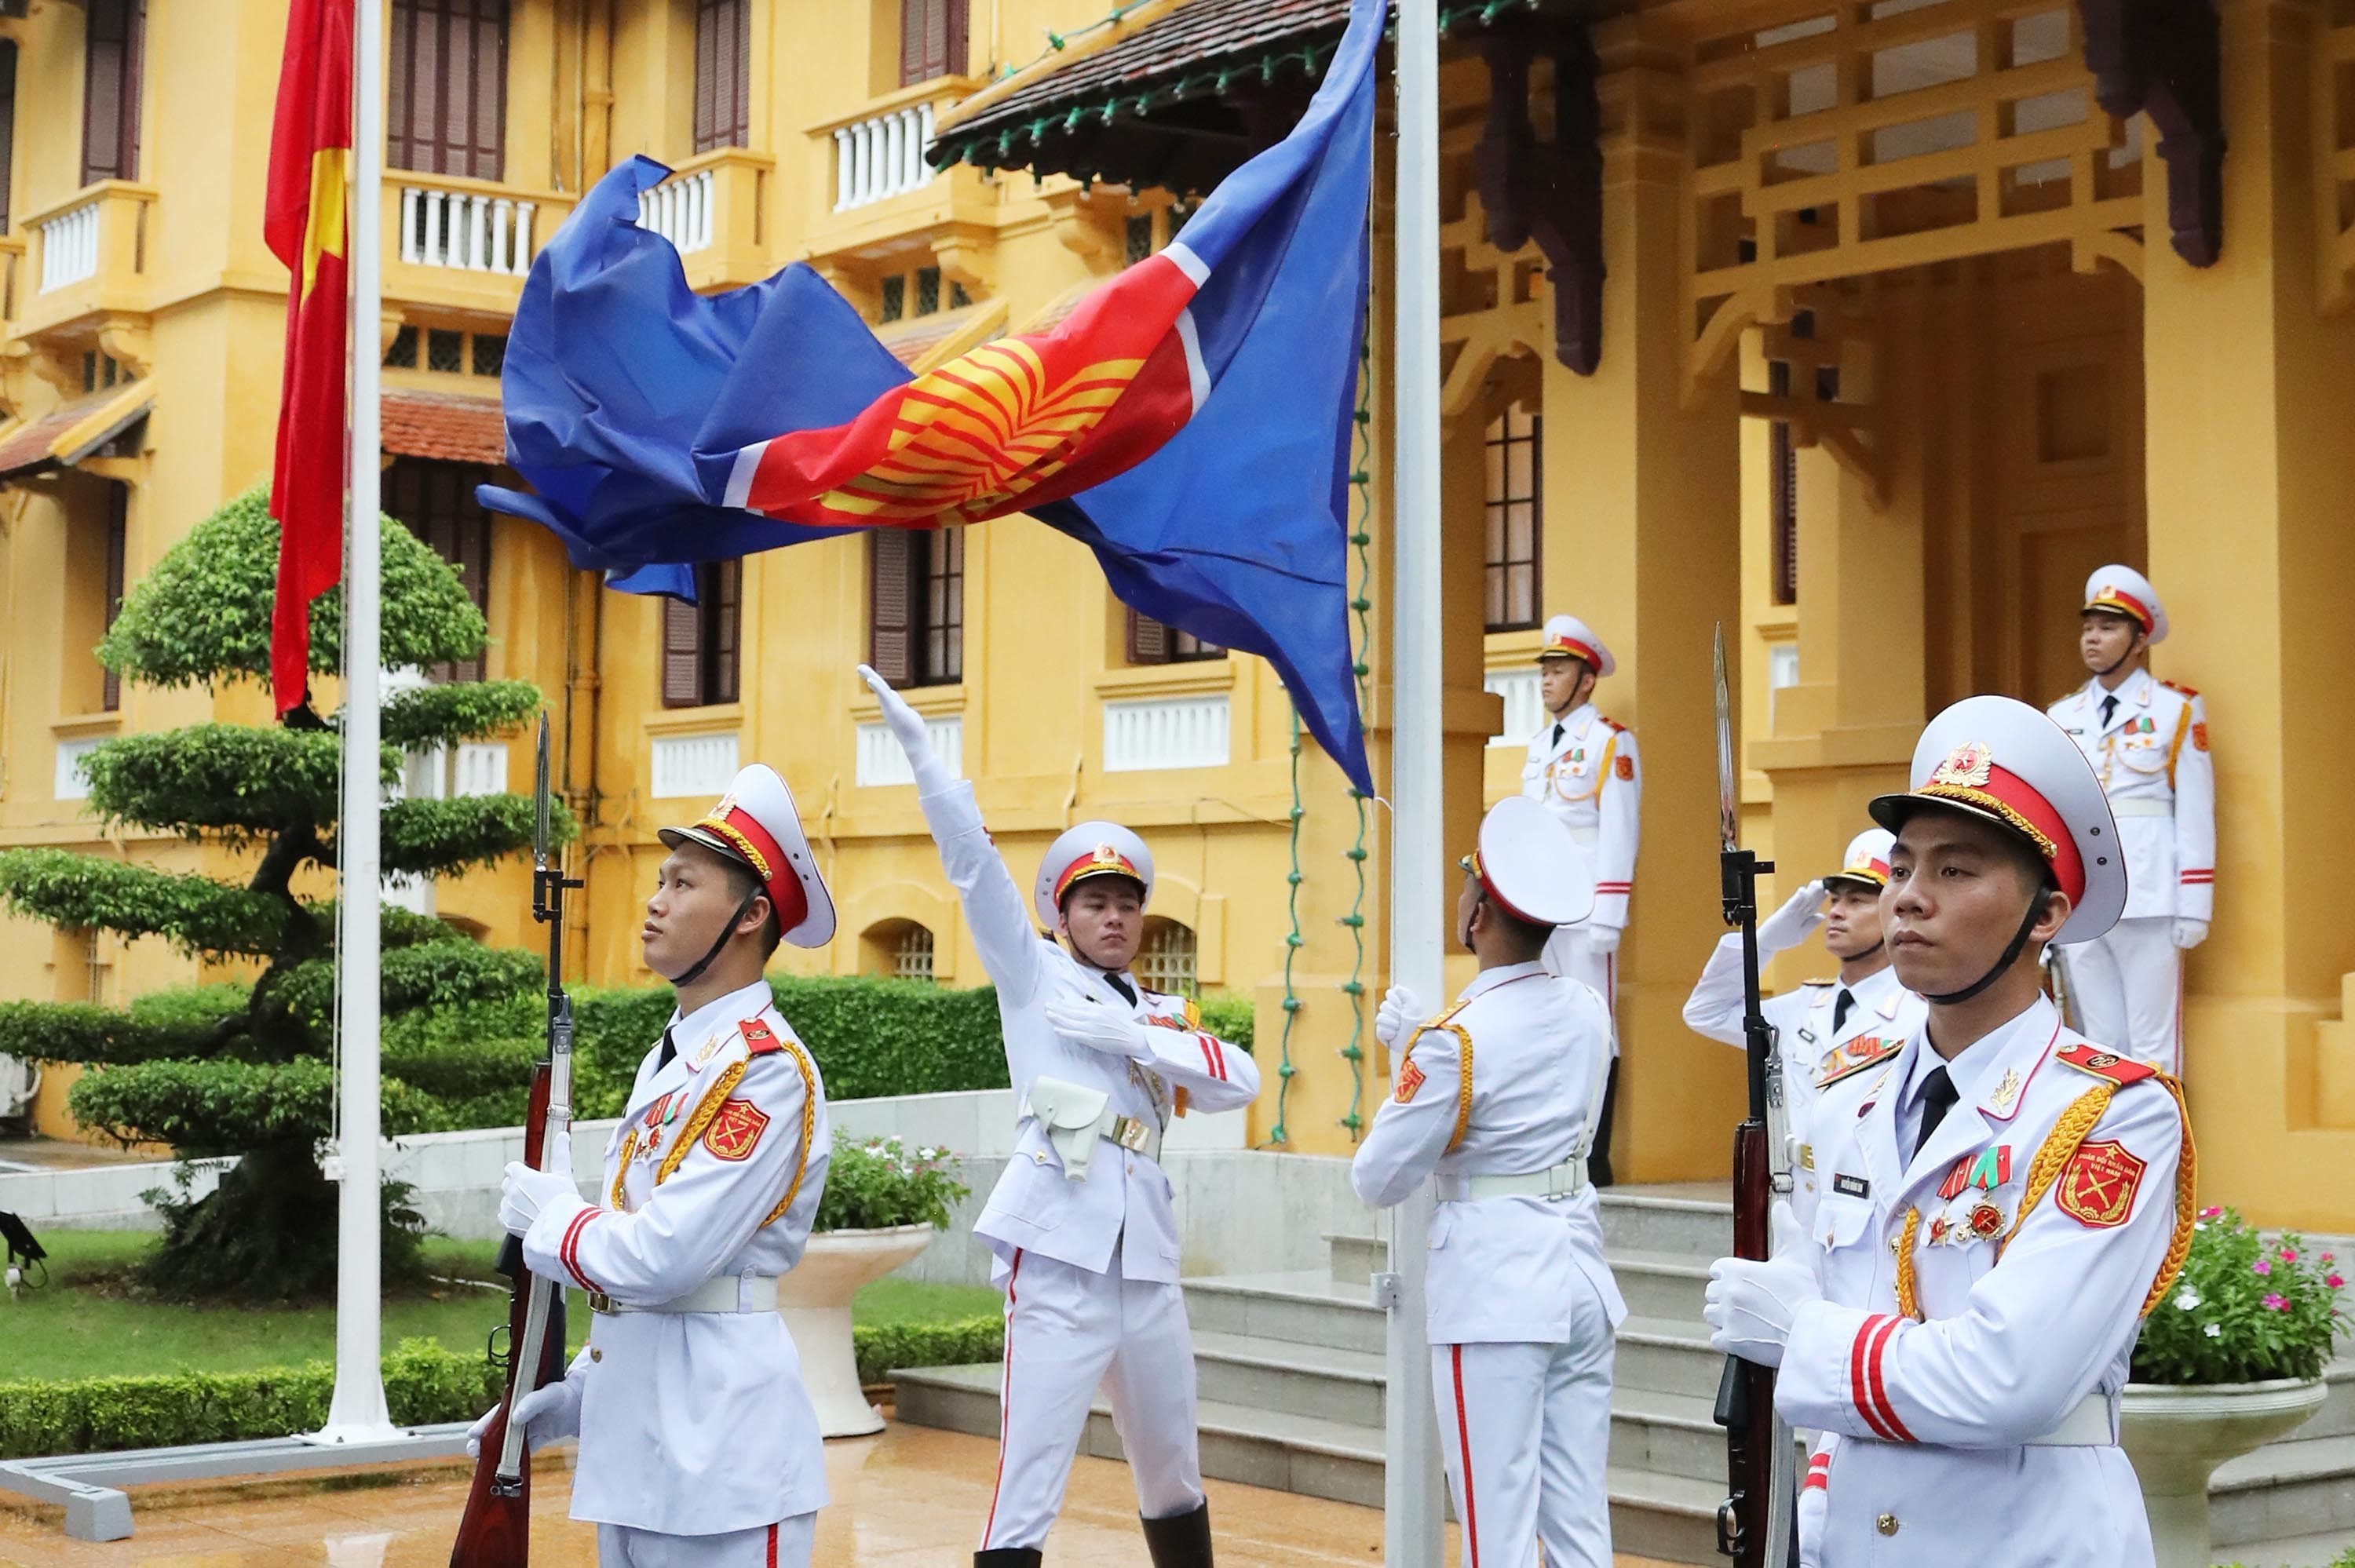 Tạp chí Cộng sản tại Bắc Ninh cập nhật tin tức về ASEAN. Tạp chí Cộng sản tại Bắc Ninh đã cập nhật tin tức về ASEAN, giúp người đọc hiểu rõ hơn về những cập nhật mới nhất trong khối ASEAN. Điều này đồng nghĩa với việc nâng cao nhận thức và sự quan tâm của người dân đối với an ninh, ổn định và hợp tác trong khu vực.